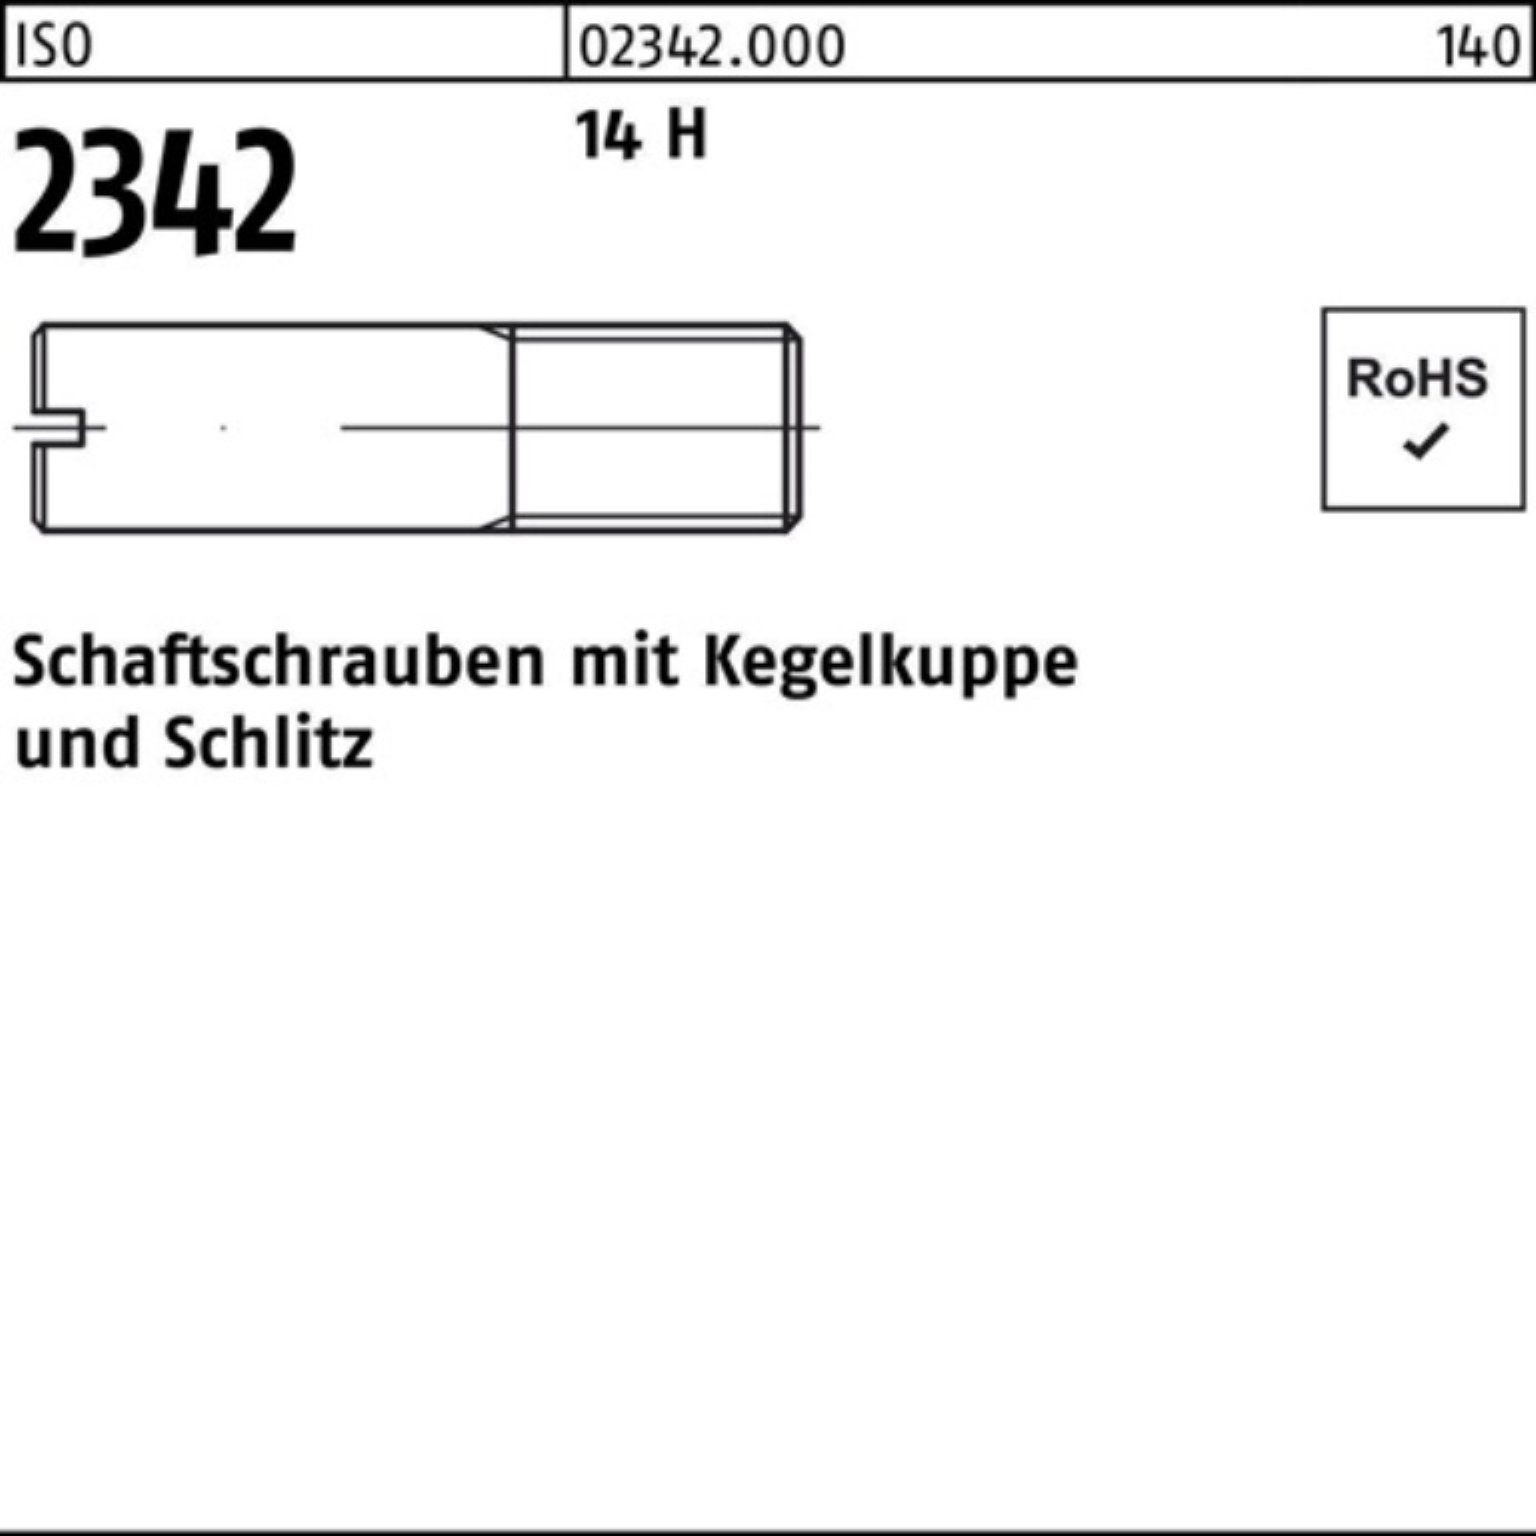 Reyher Schraube 100er Pack Schaftschraube ISO 2342 Kegelkuppe/Schlitz M4x 12 14 H 100